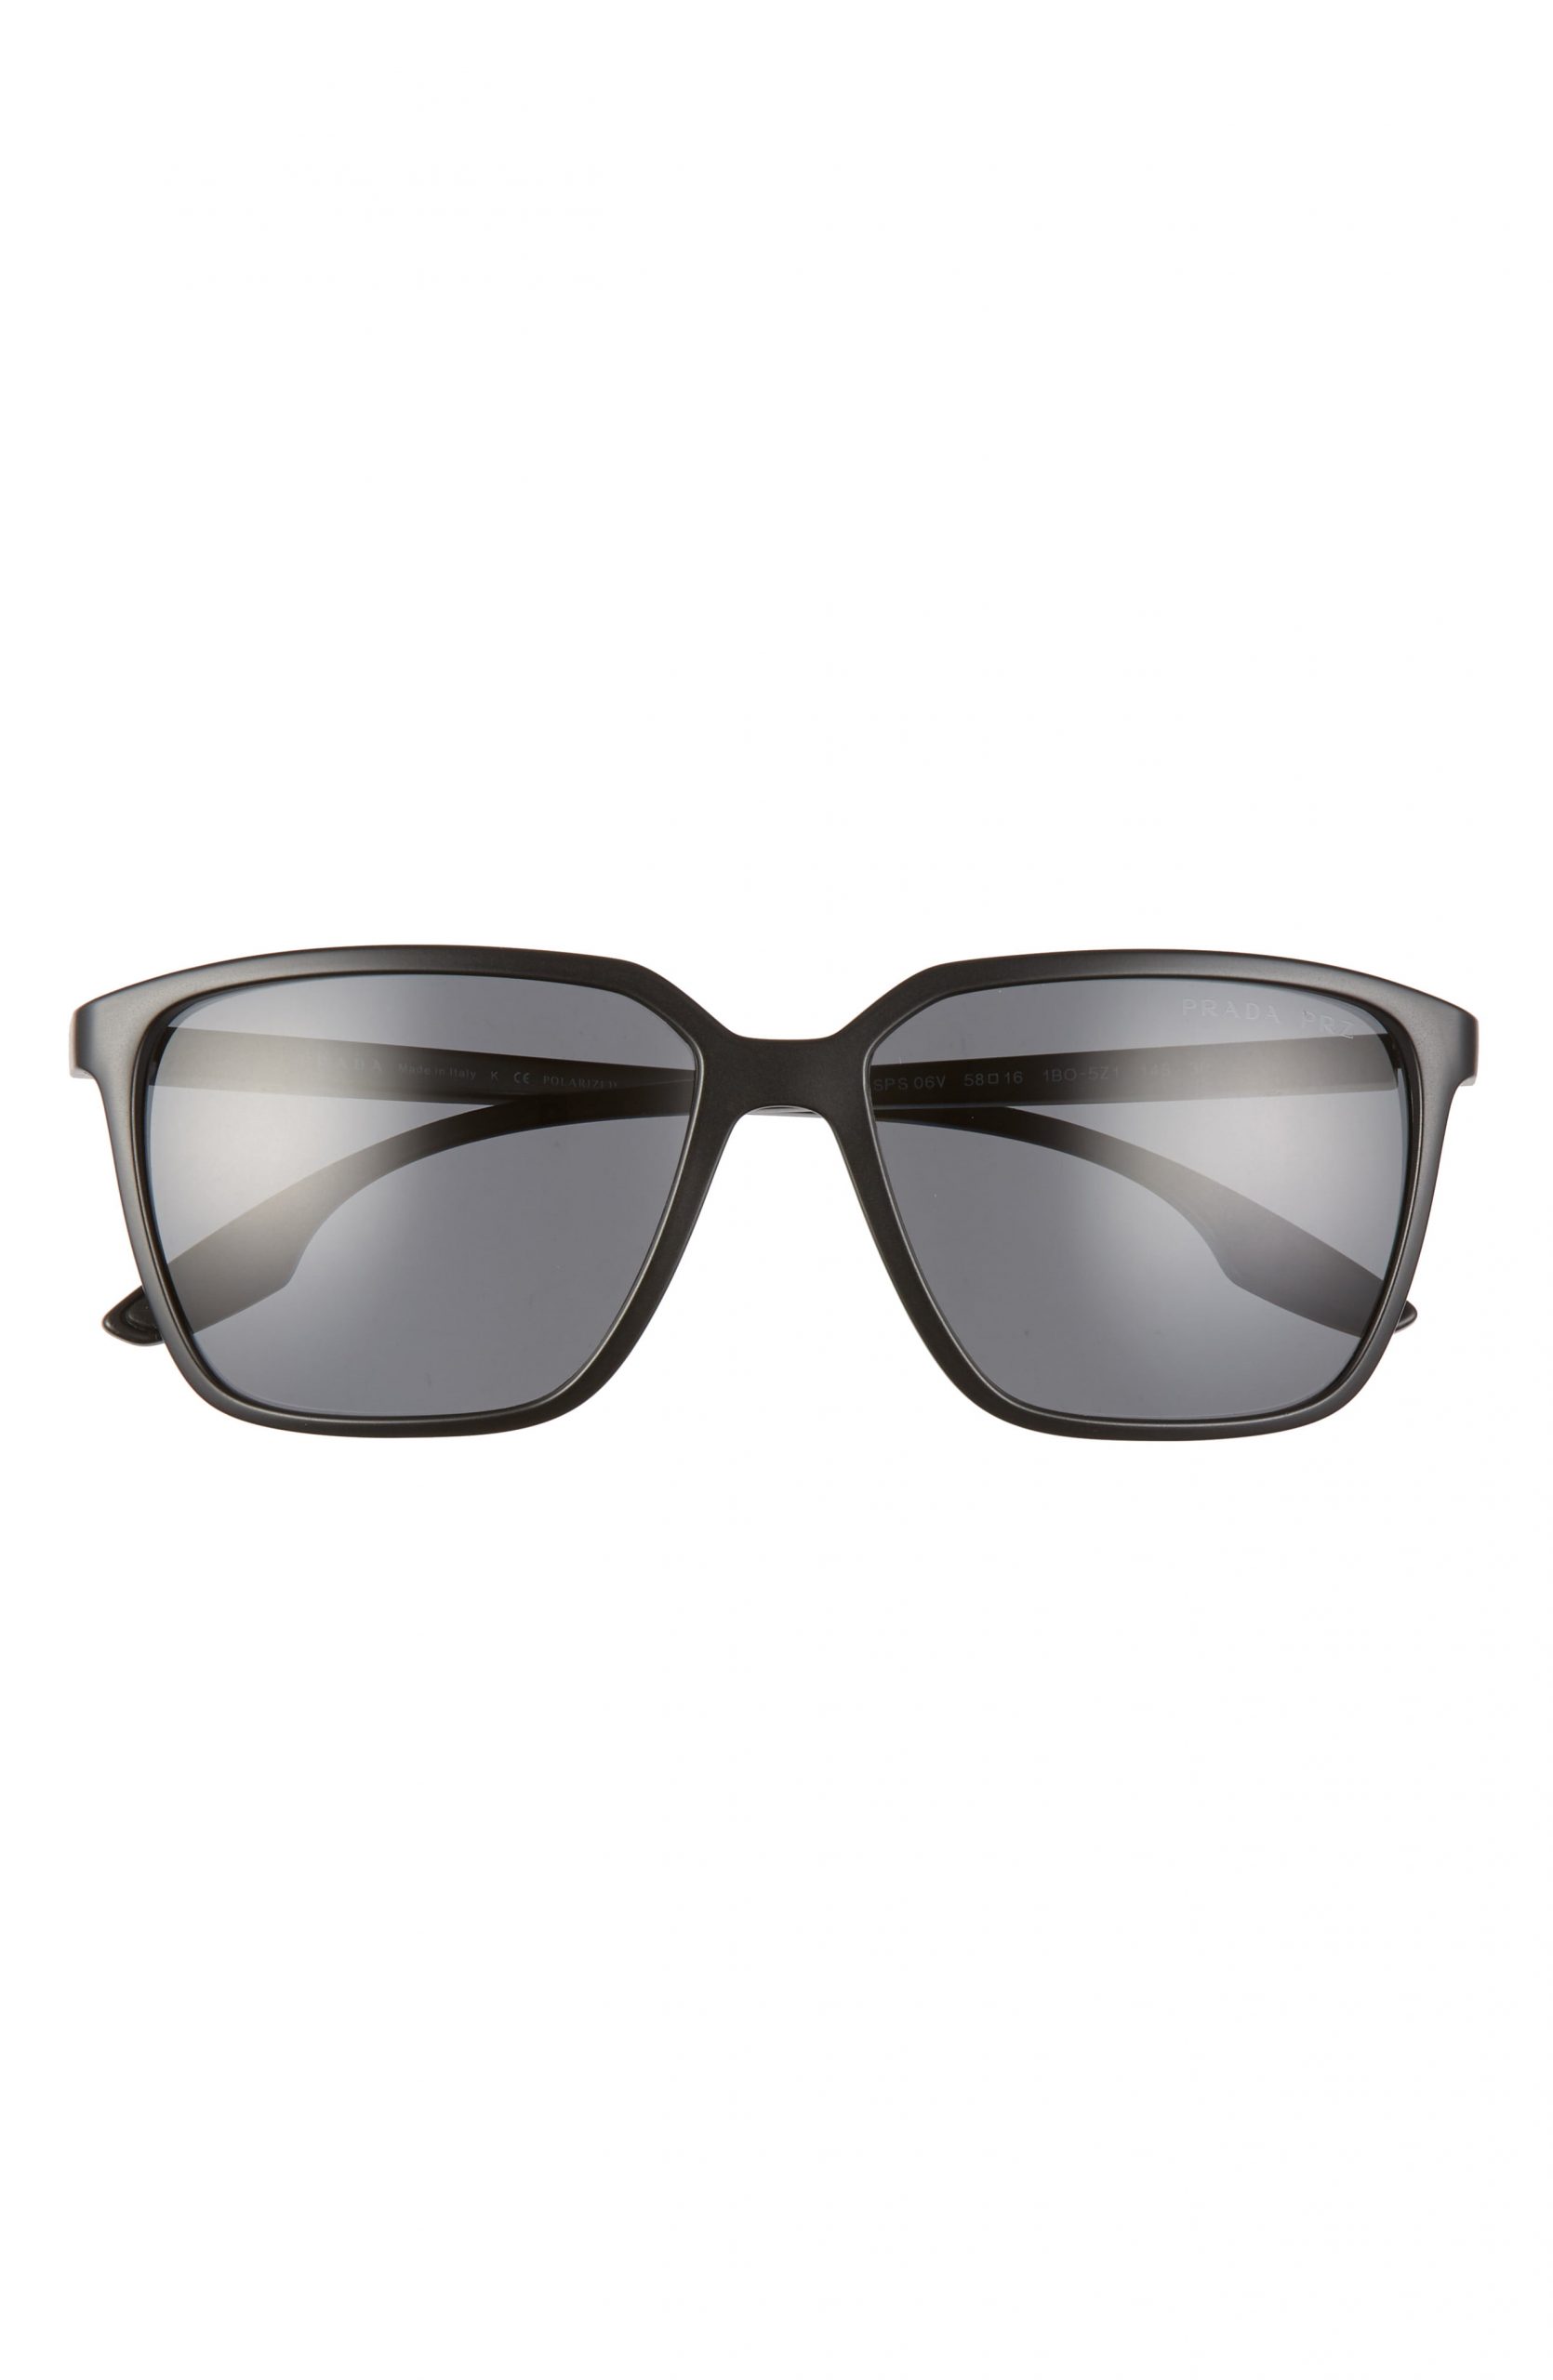 prada 58mm square sunglasses